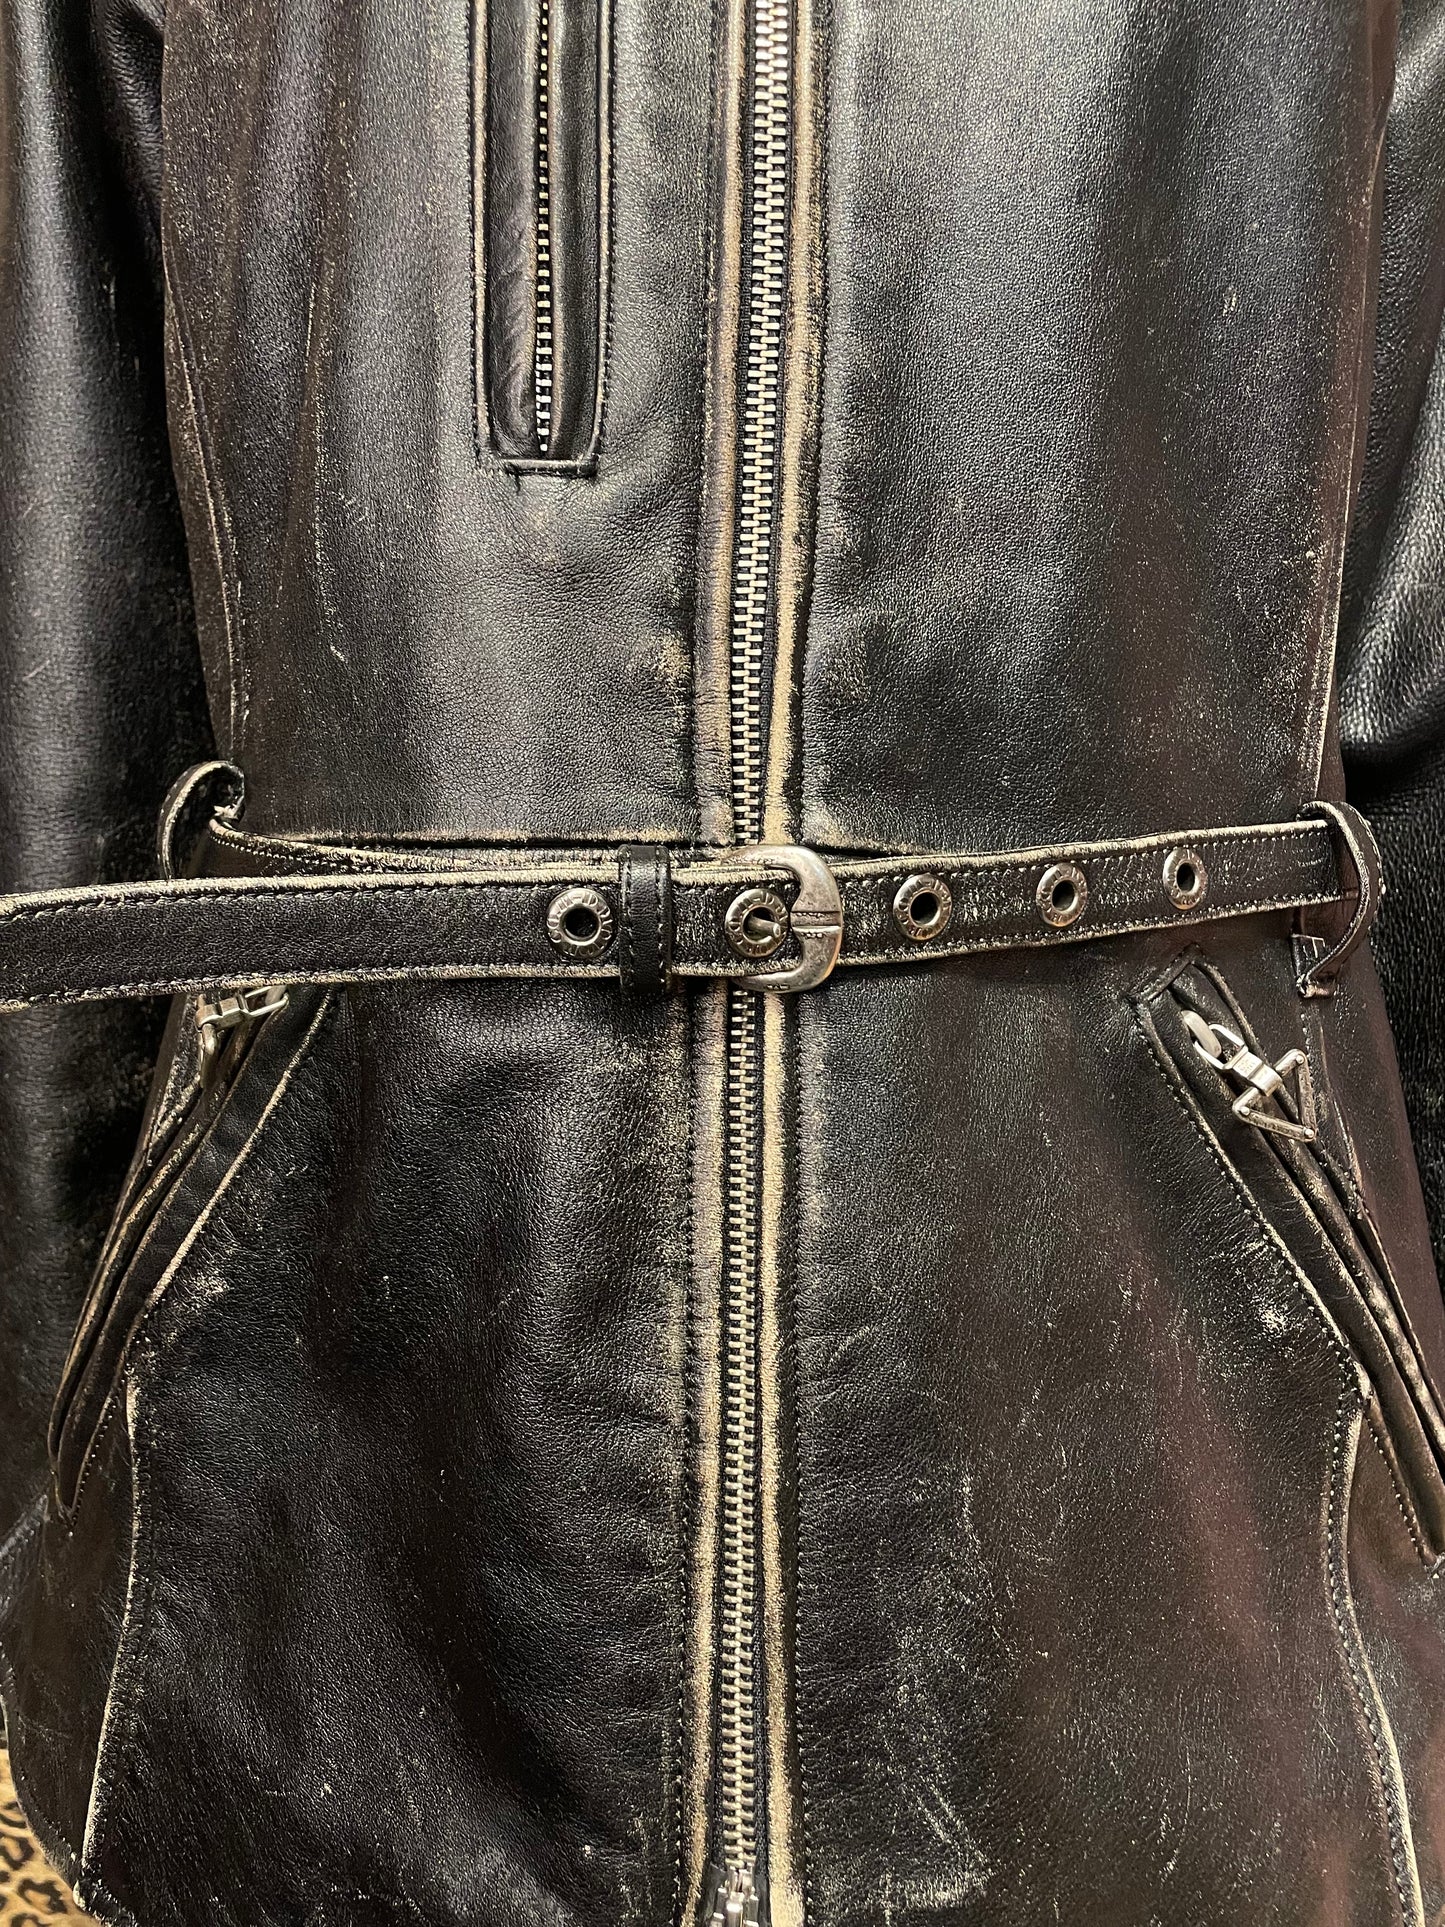 Harley Davidson Belted Leather Jacket